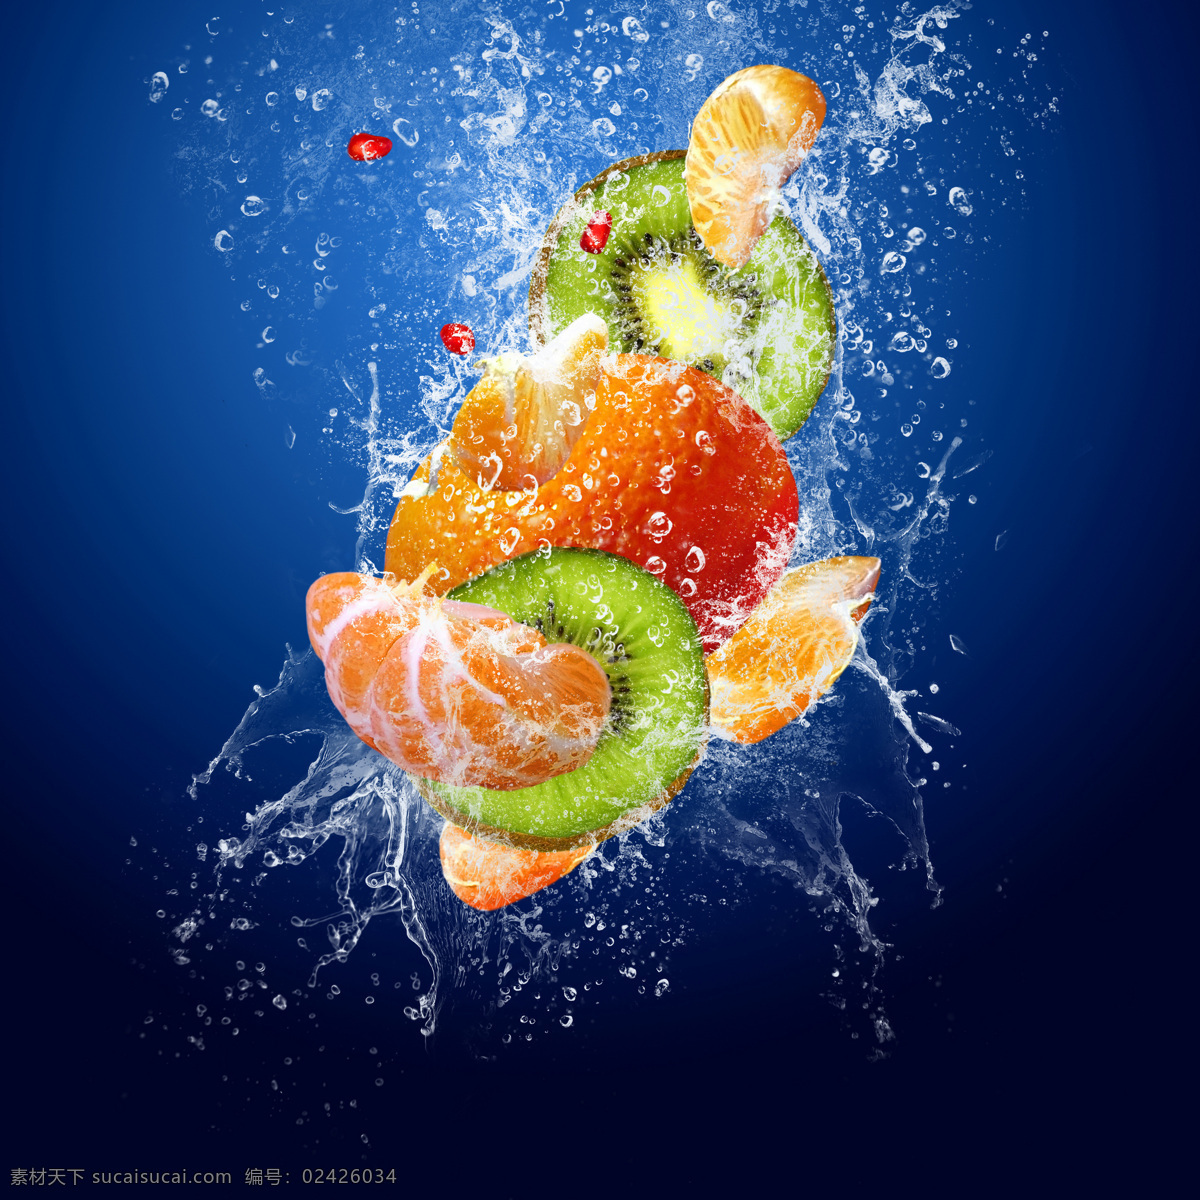 新鲜 水果 食物 新鲜水果 水花 溅起 水珠 橙子 猕猴桃 水果图片 餐饮美食